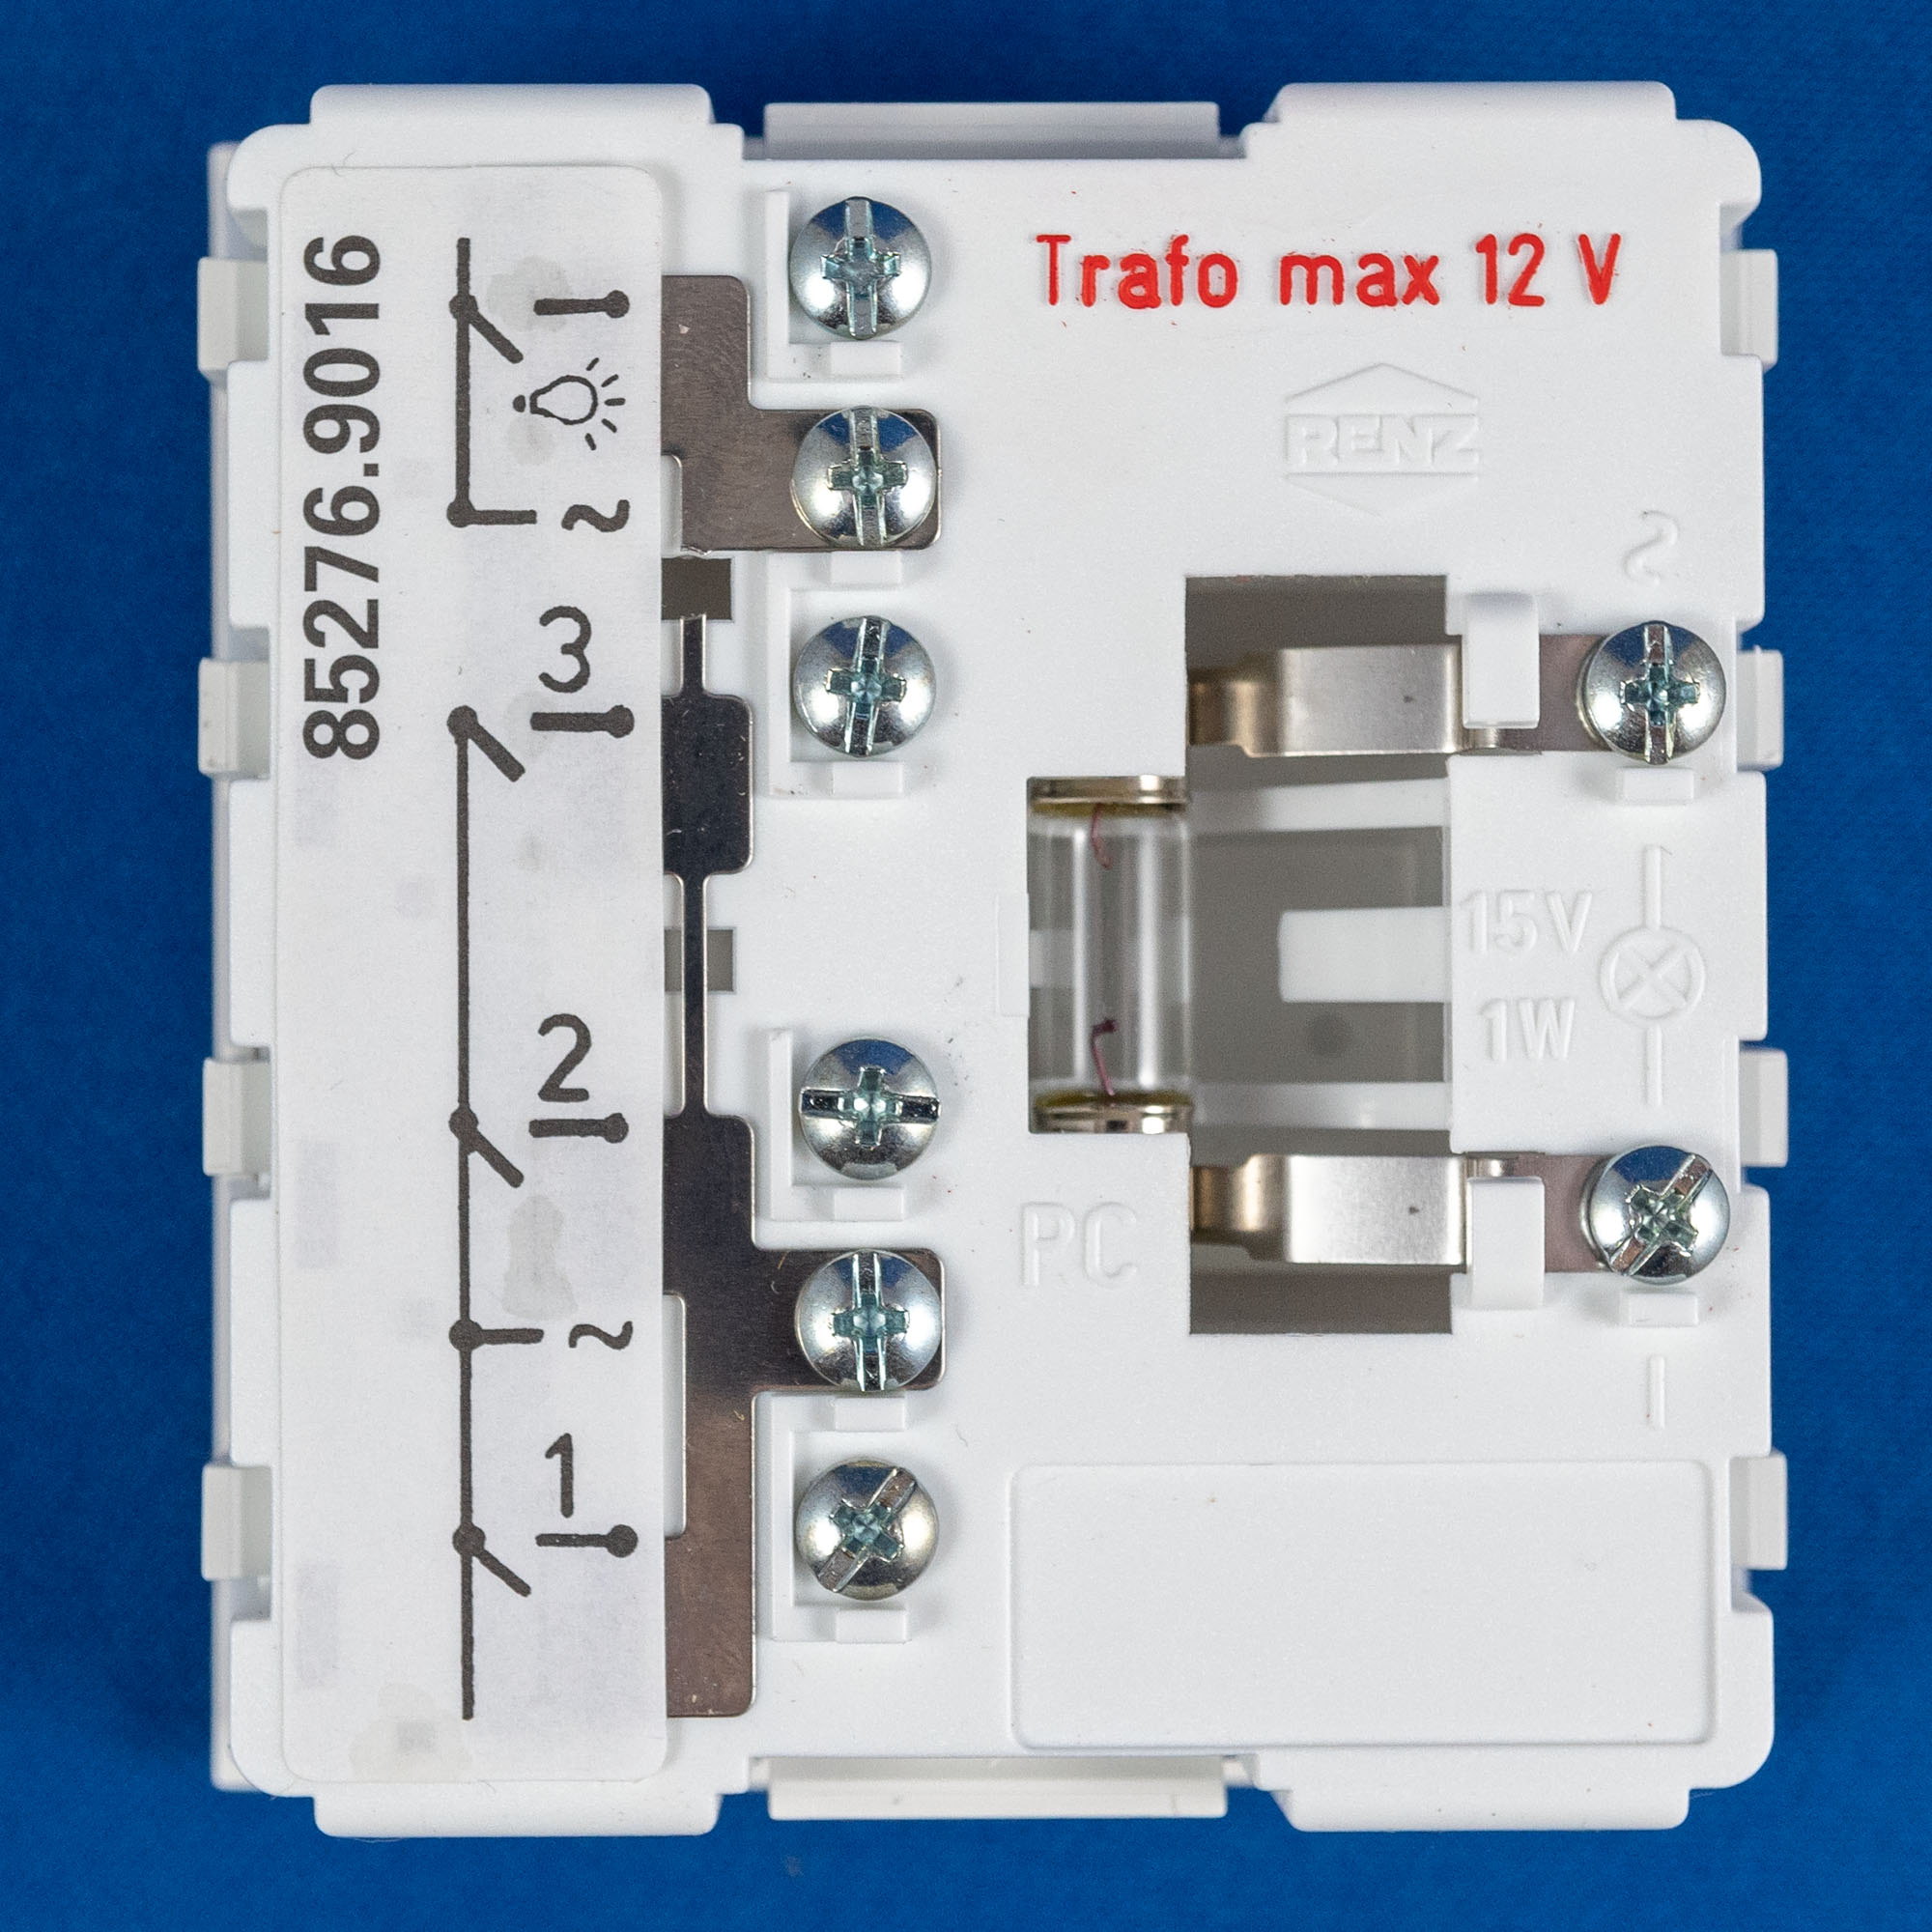 LED Soffitte für Beleuchtungshalterung 12V AC/DC, 0,25 W, 8 x 31